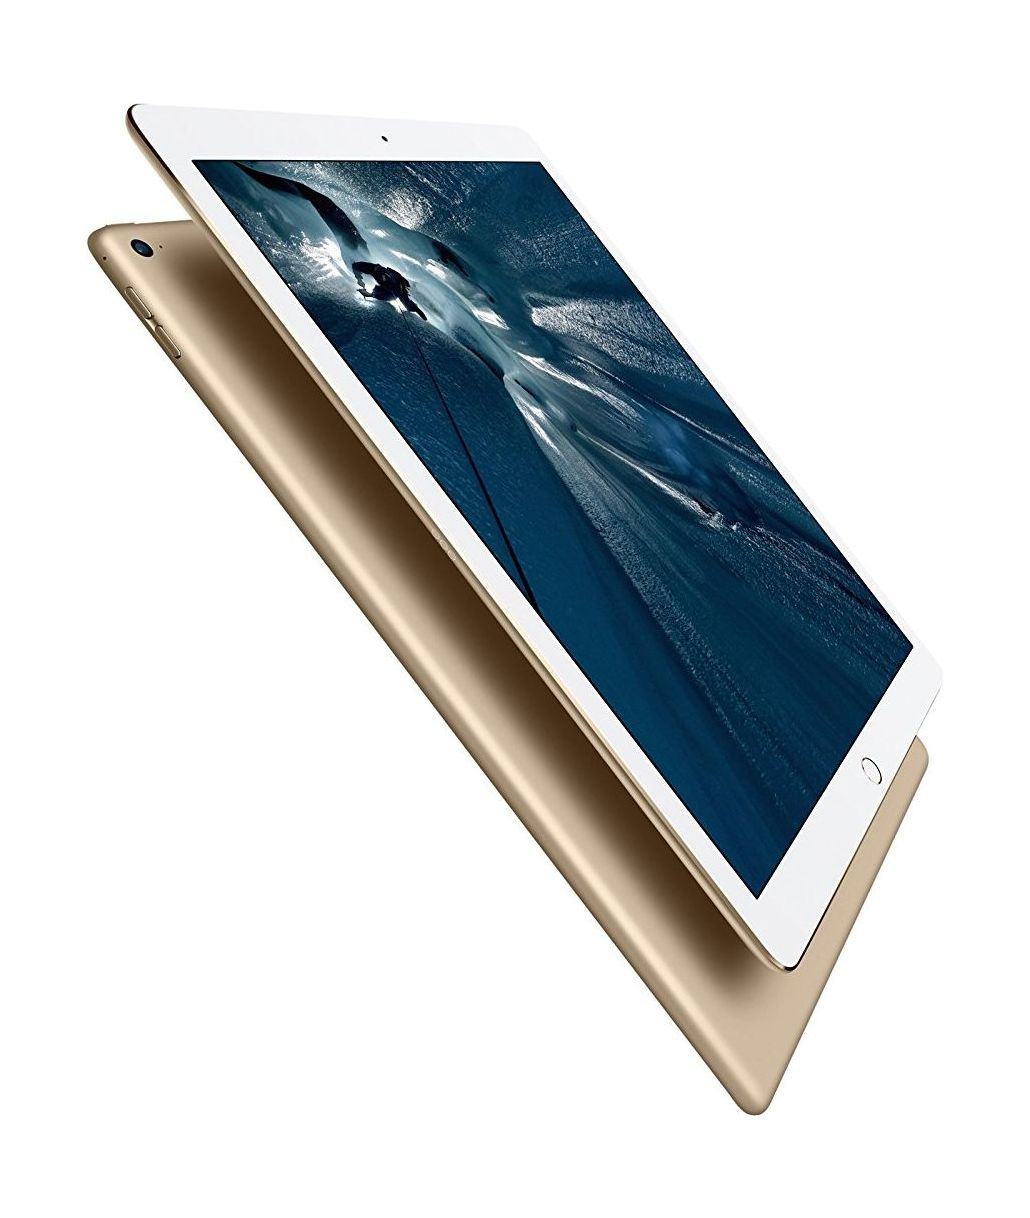 Apple iPad Pro 10.5 Wi-Fi + Cellular 256GB Gold (MPHJ2)